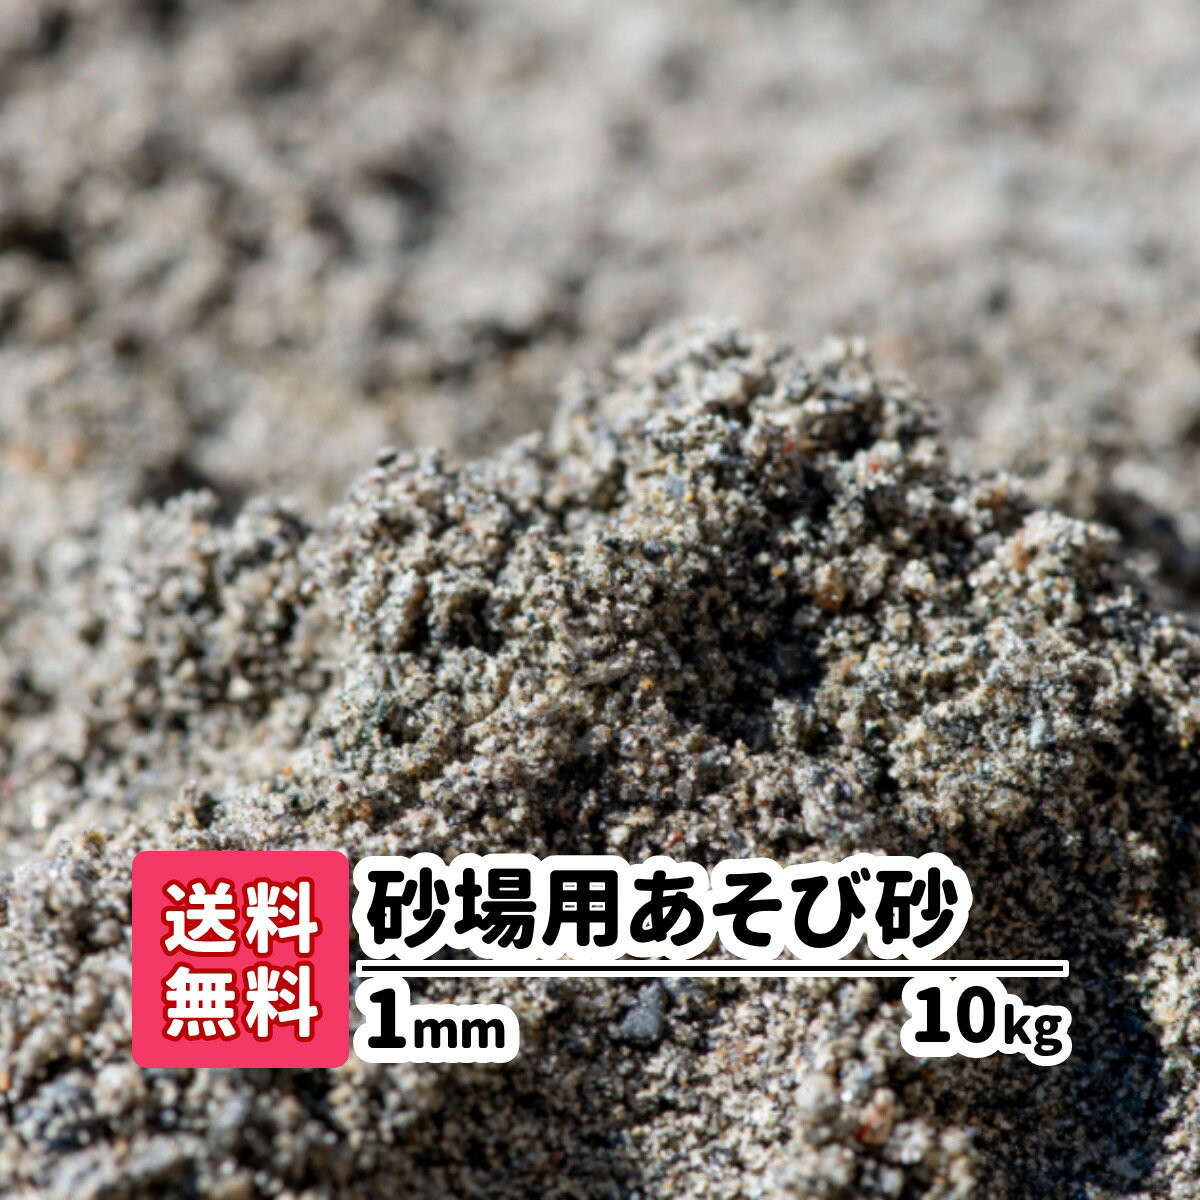 【送料無料】砂場用砂 10kg 1mm 放射線測定済み 砂遊び 砂場の砂 子供 砂 すな 砂場 安心安全 静岡県産 庭遊び 砂あ…